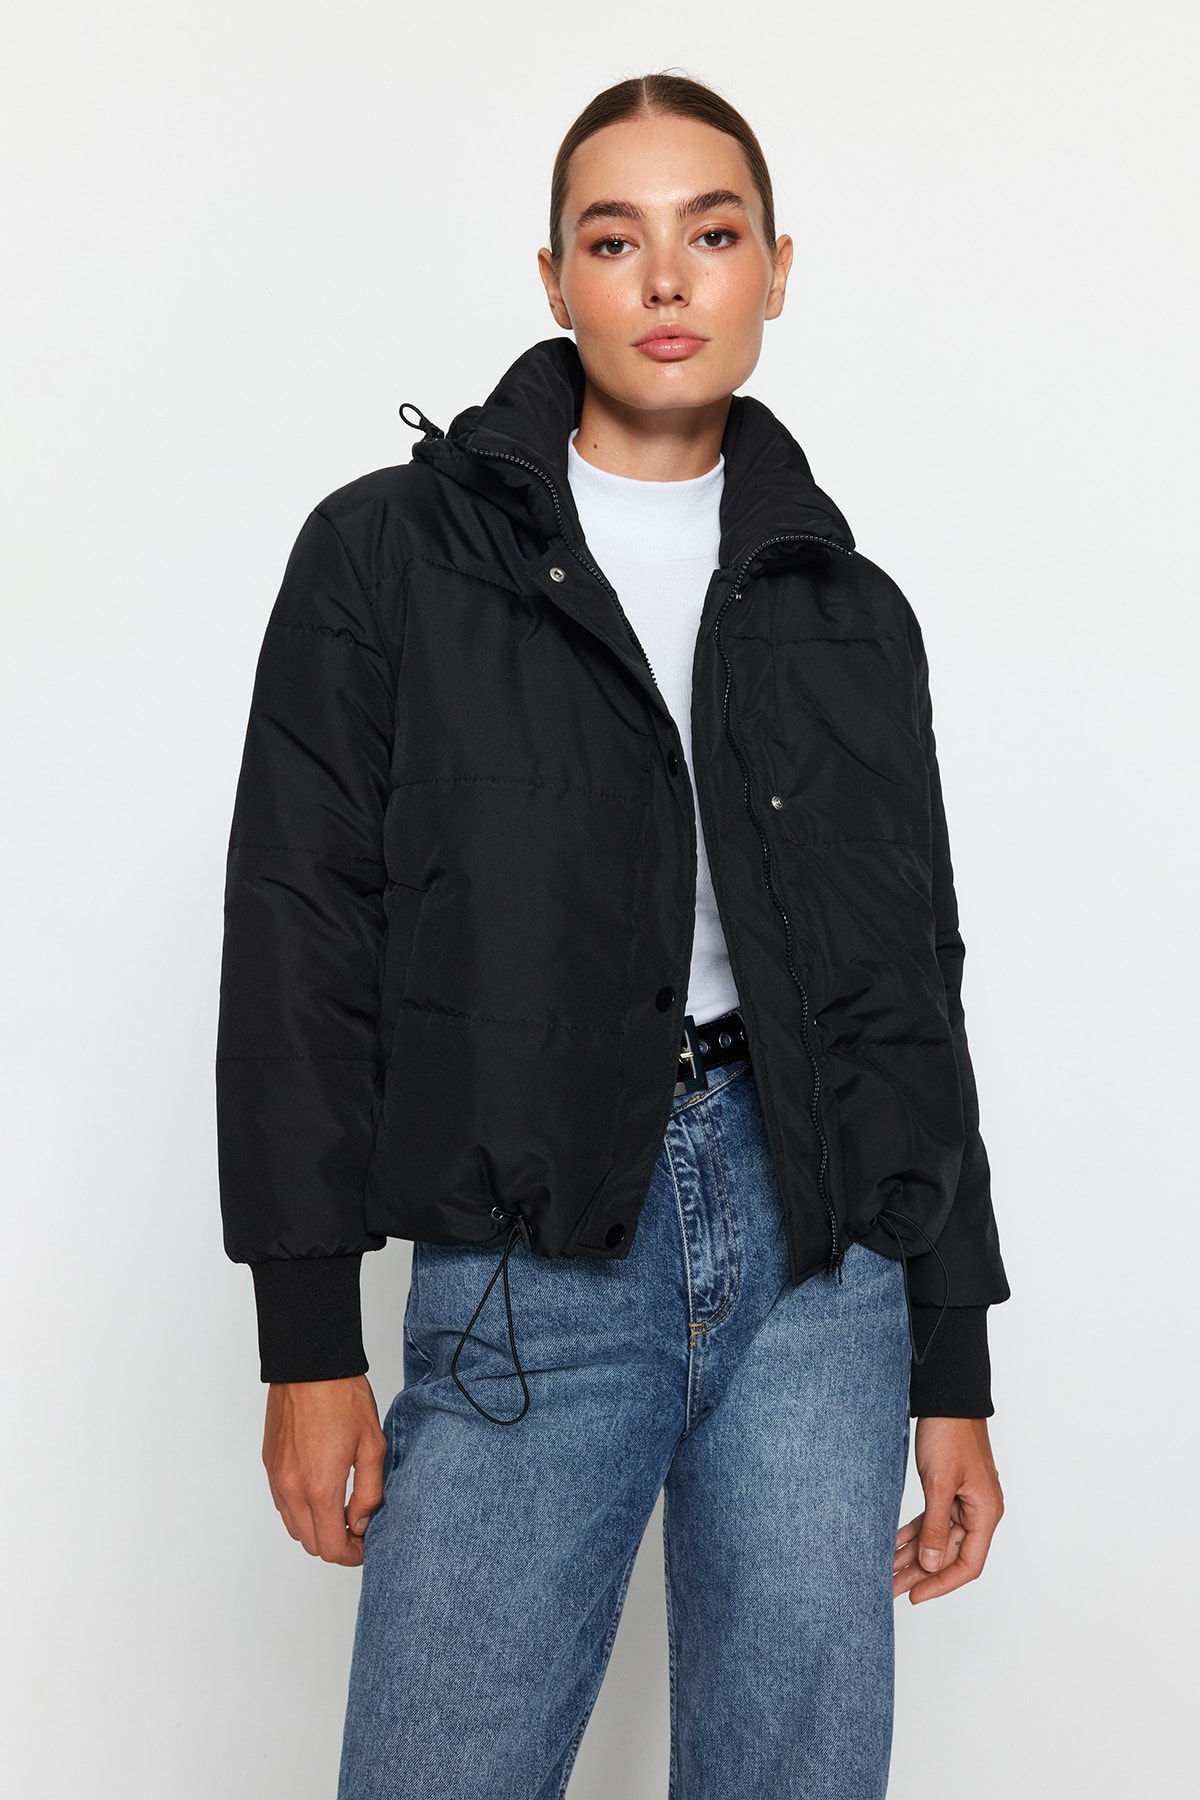 Куртка-пуховик Trendyol оверсайз водоотталкивающая стеганая с капюшоном, черный куртка стеганая тонкая с капюшоном 10 18 лет 16 лет 174 см черный